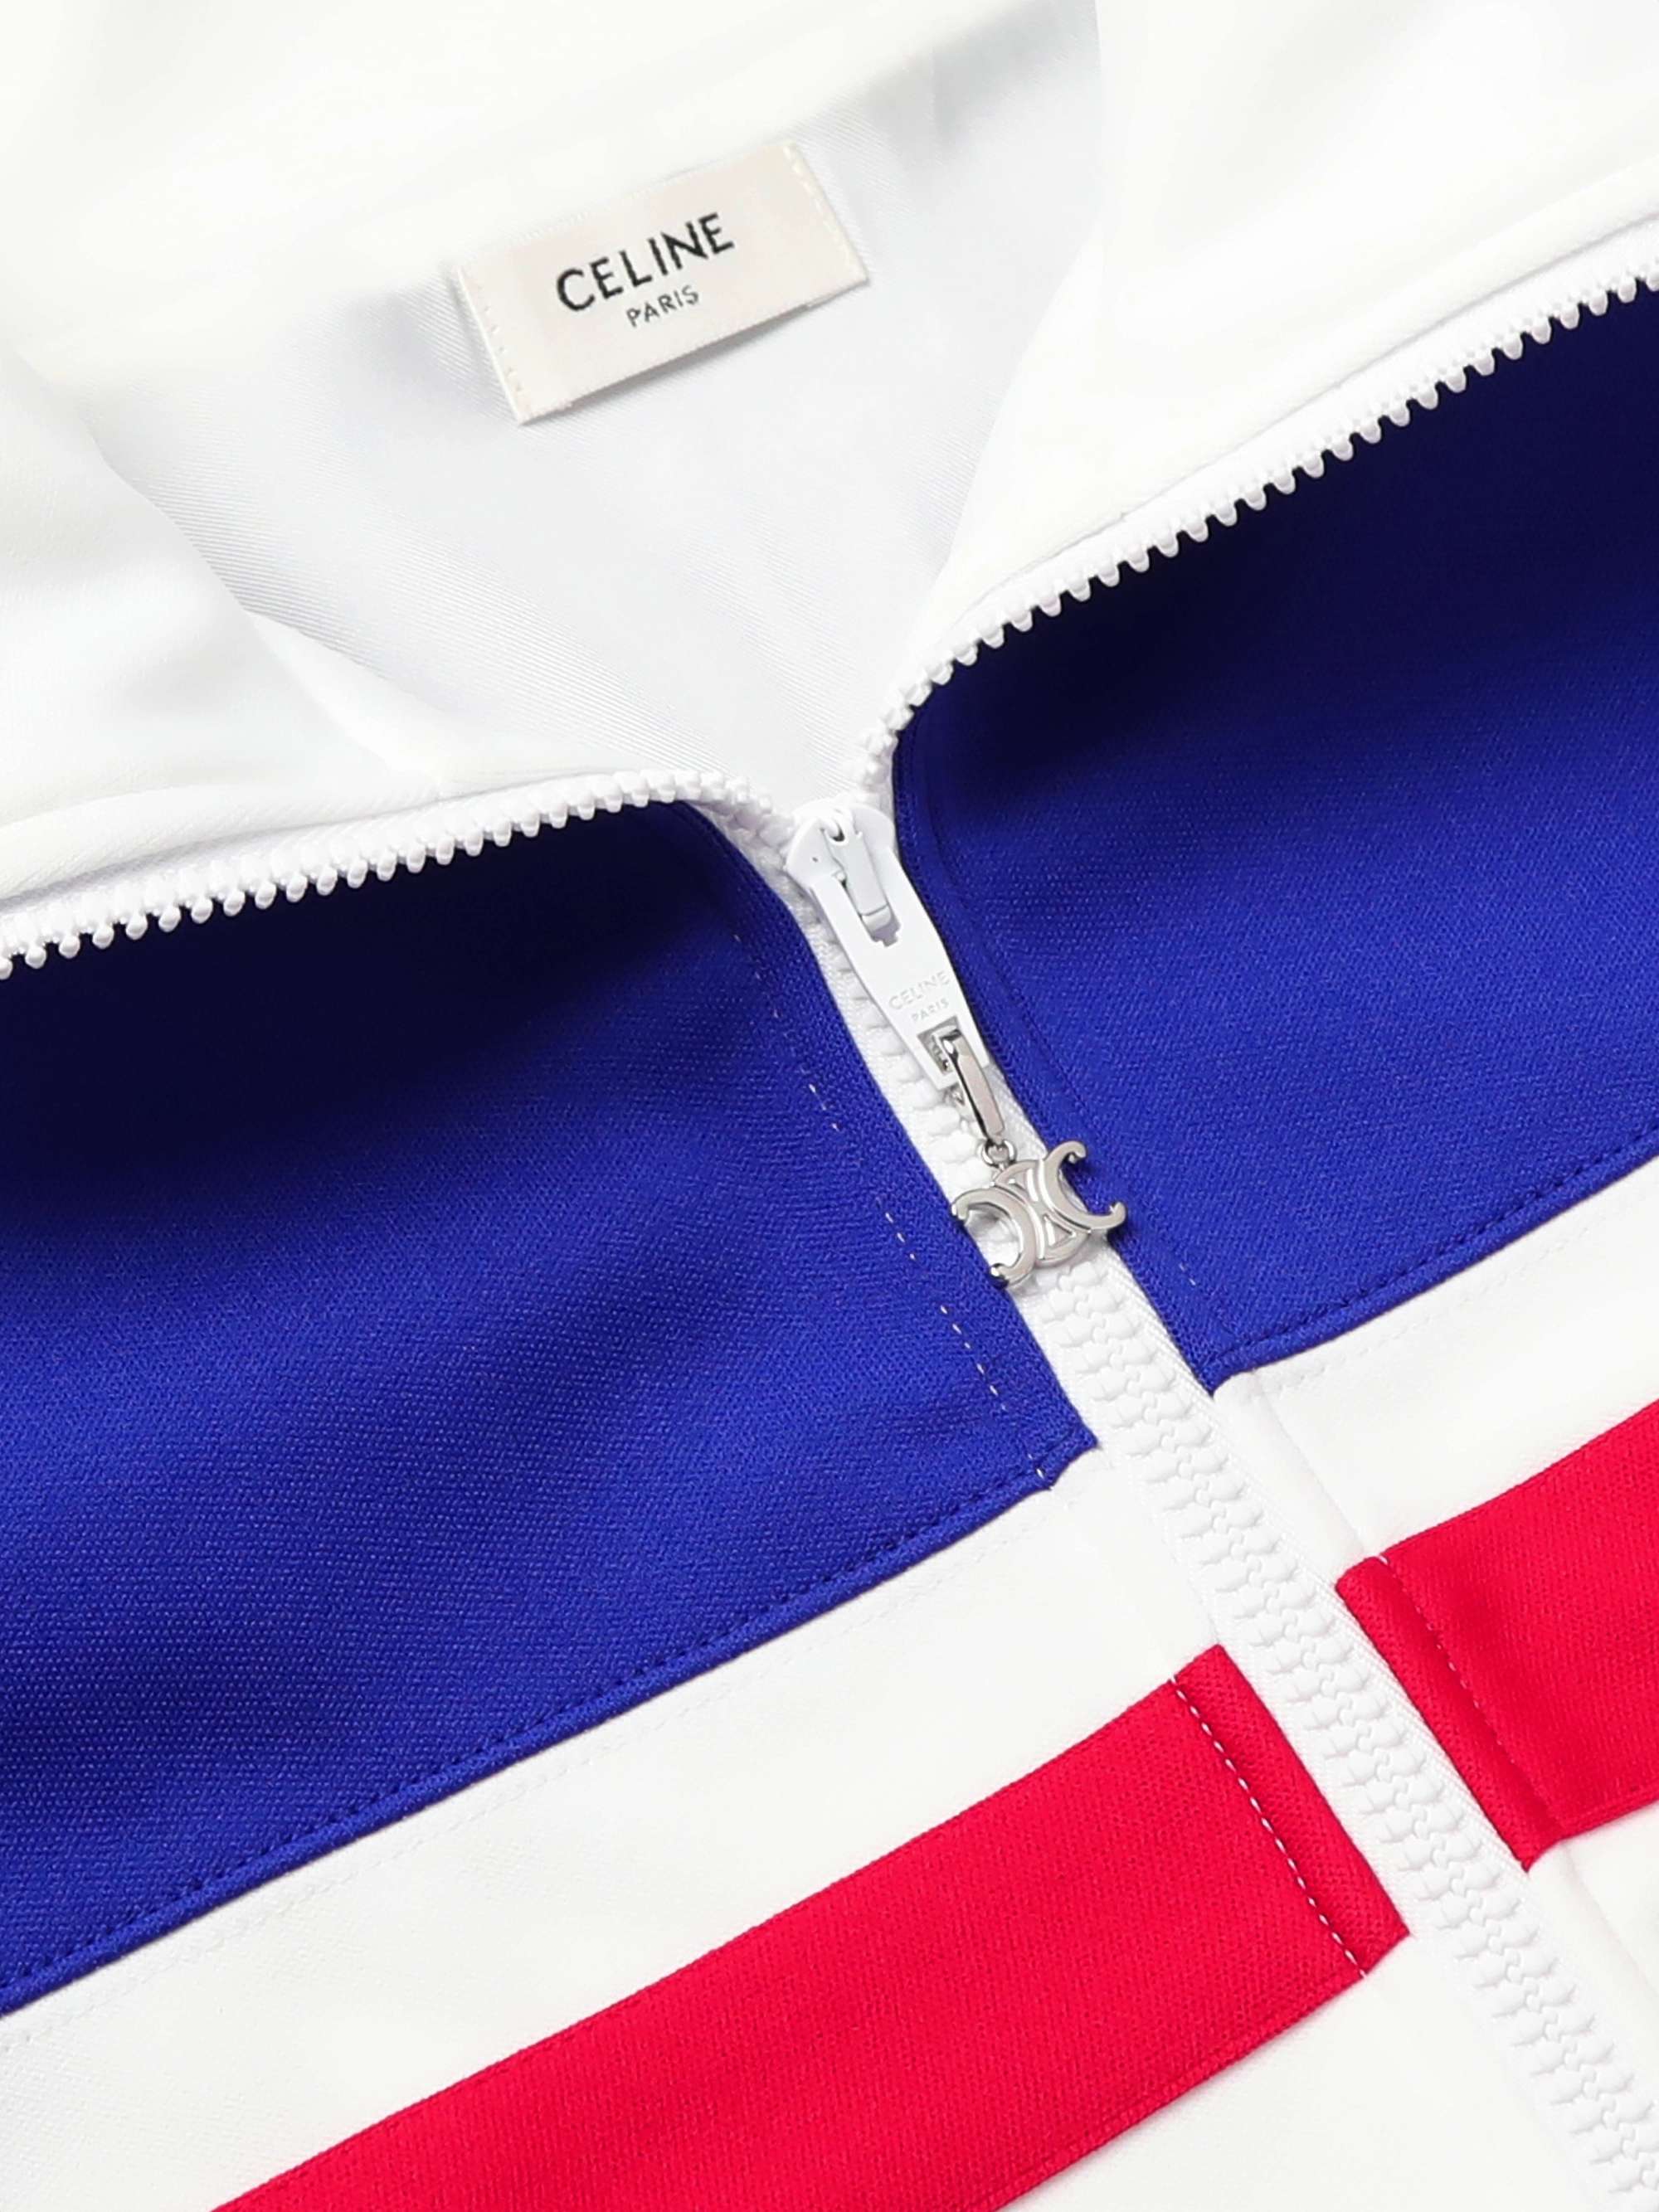 CELINE HOMME Logo-Embroidered Striped Jersey Track Jacket